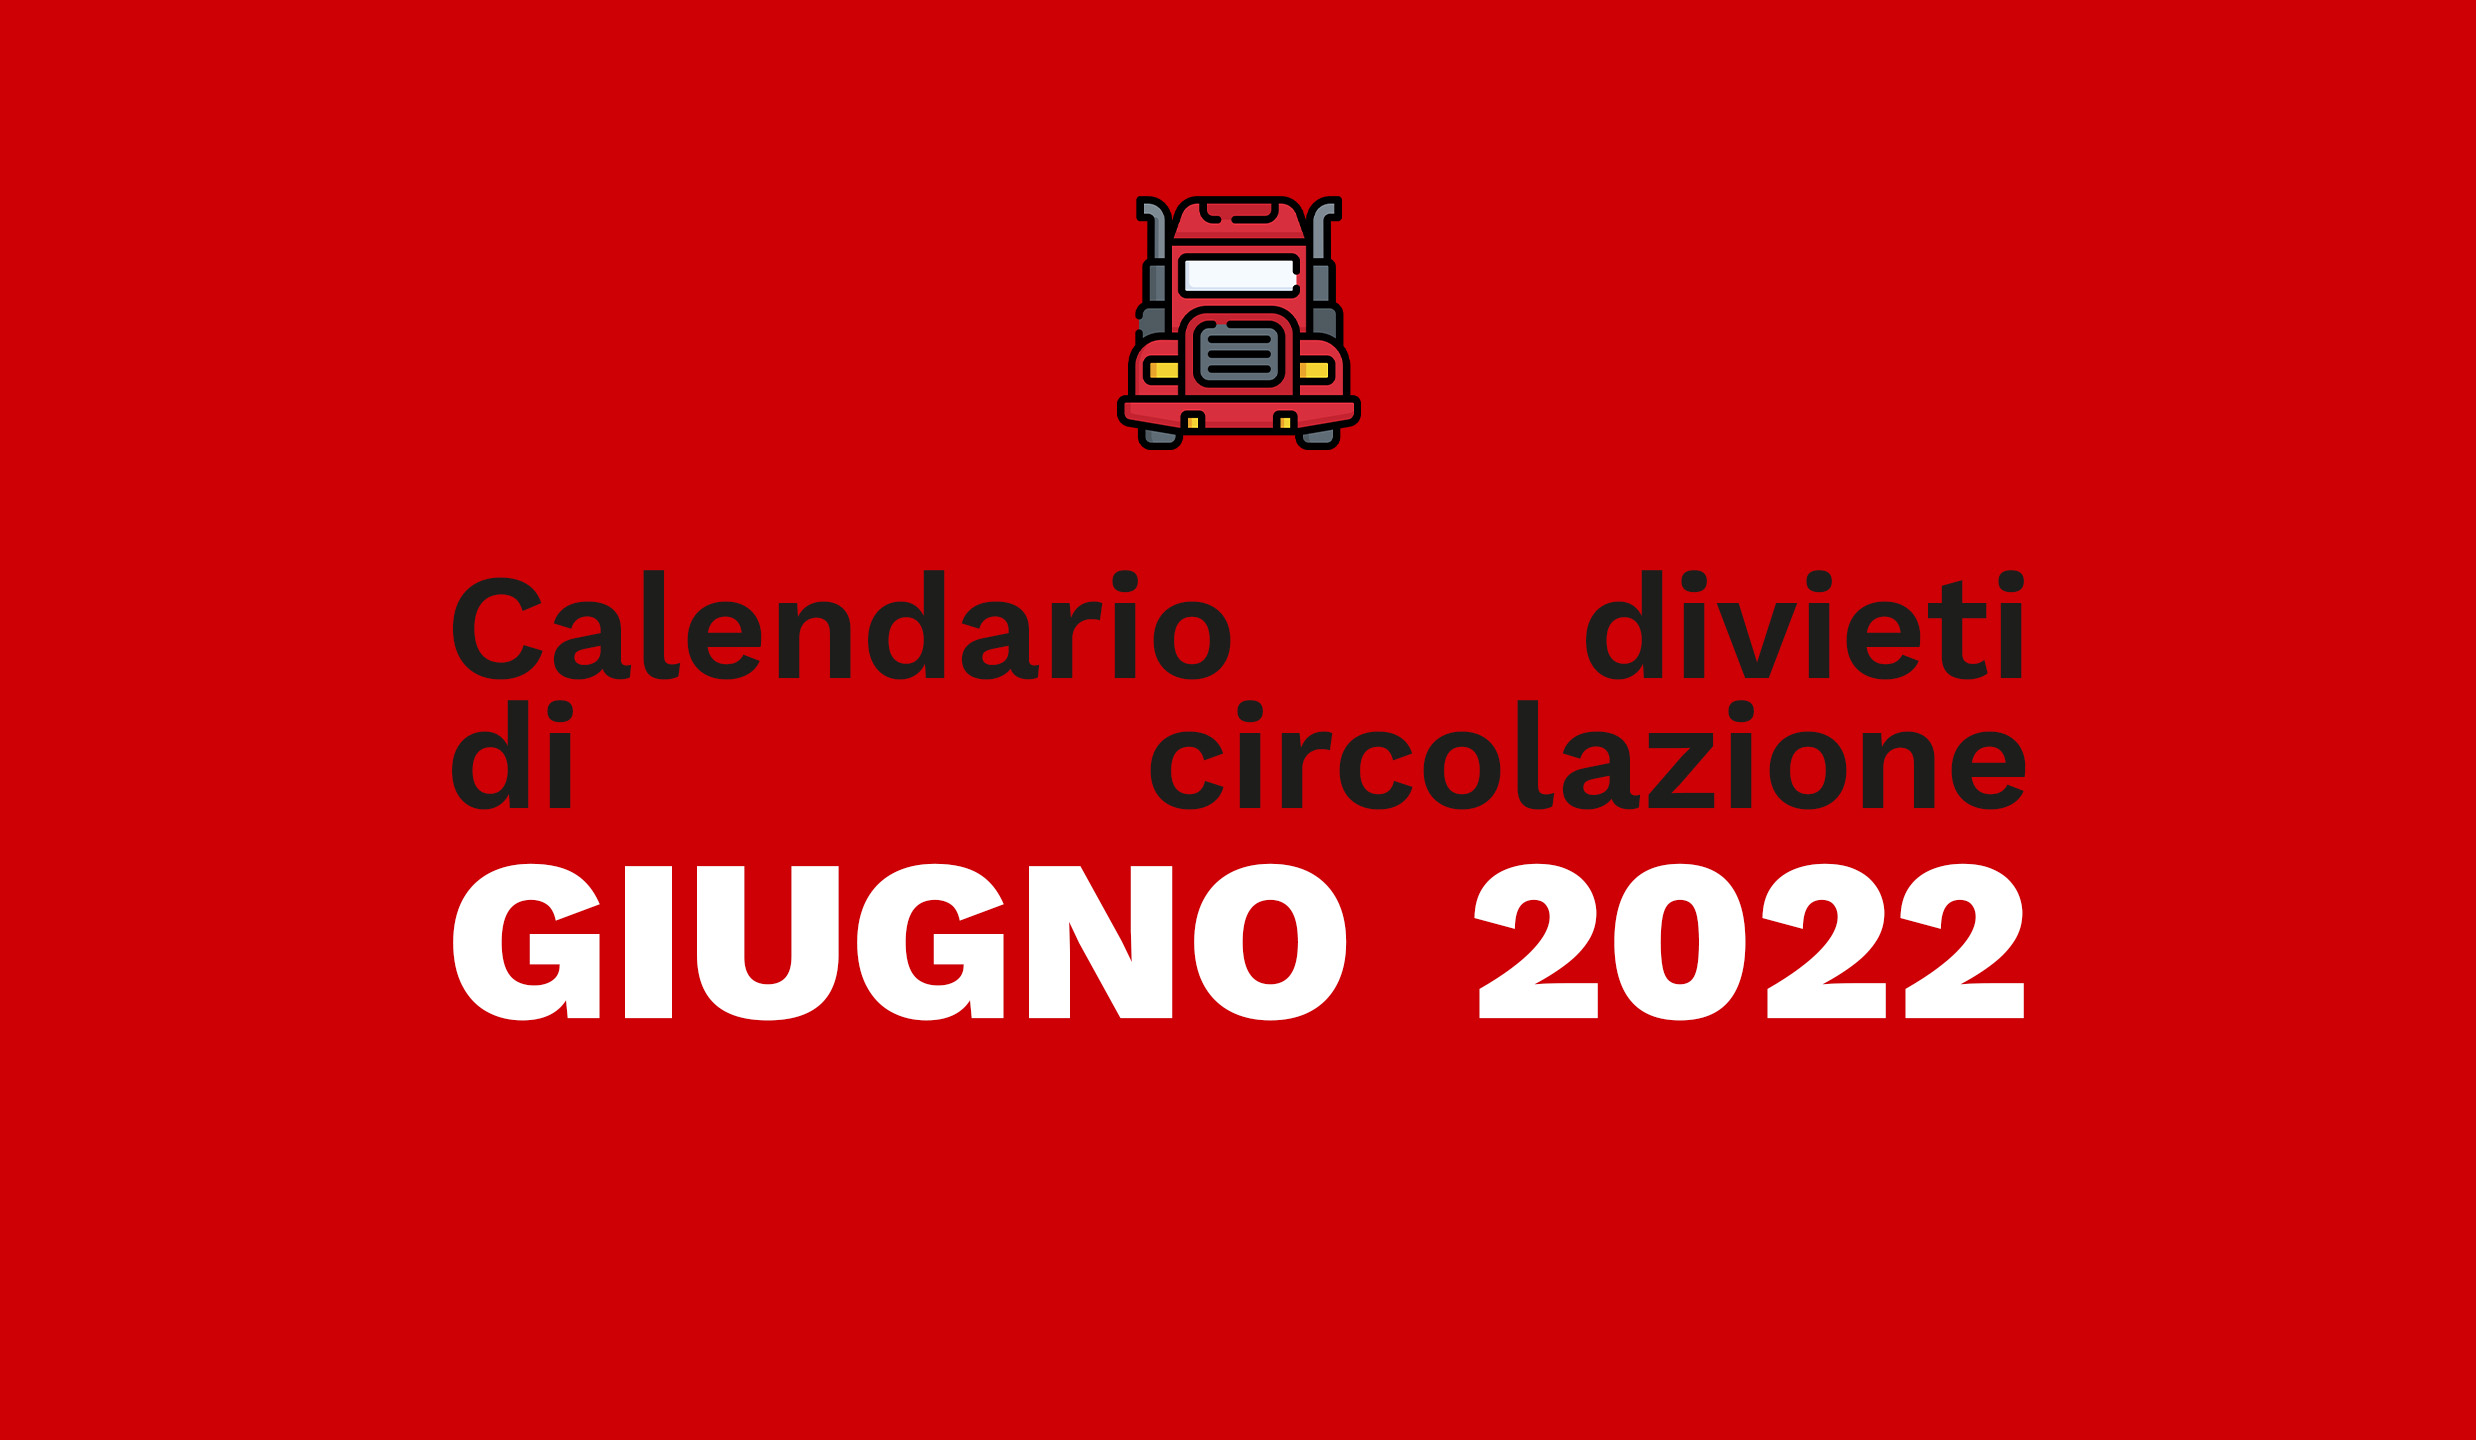 Calendario estivo dei mezzi pesanti 2022: tutte le date dei blocchi di giugno